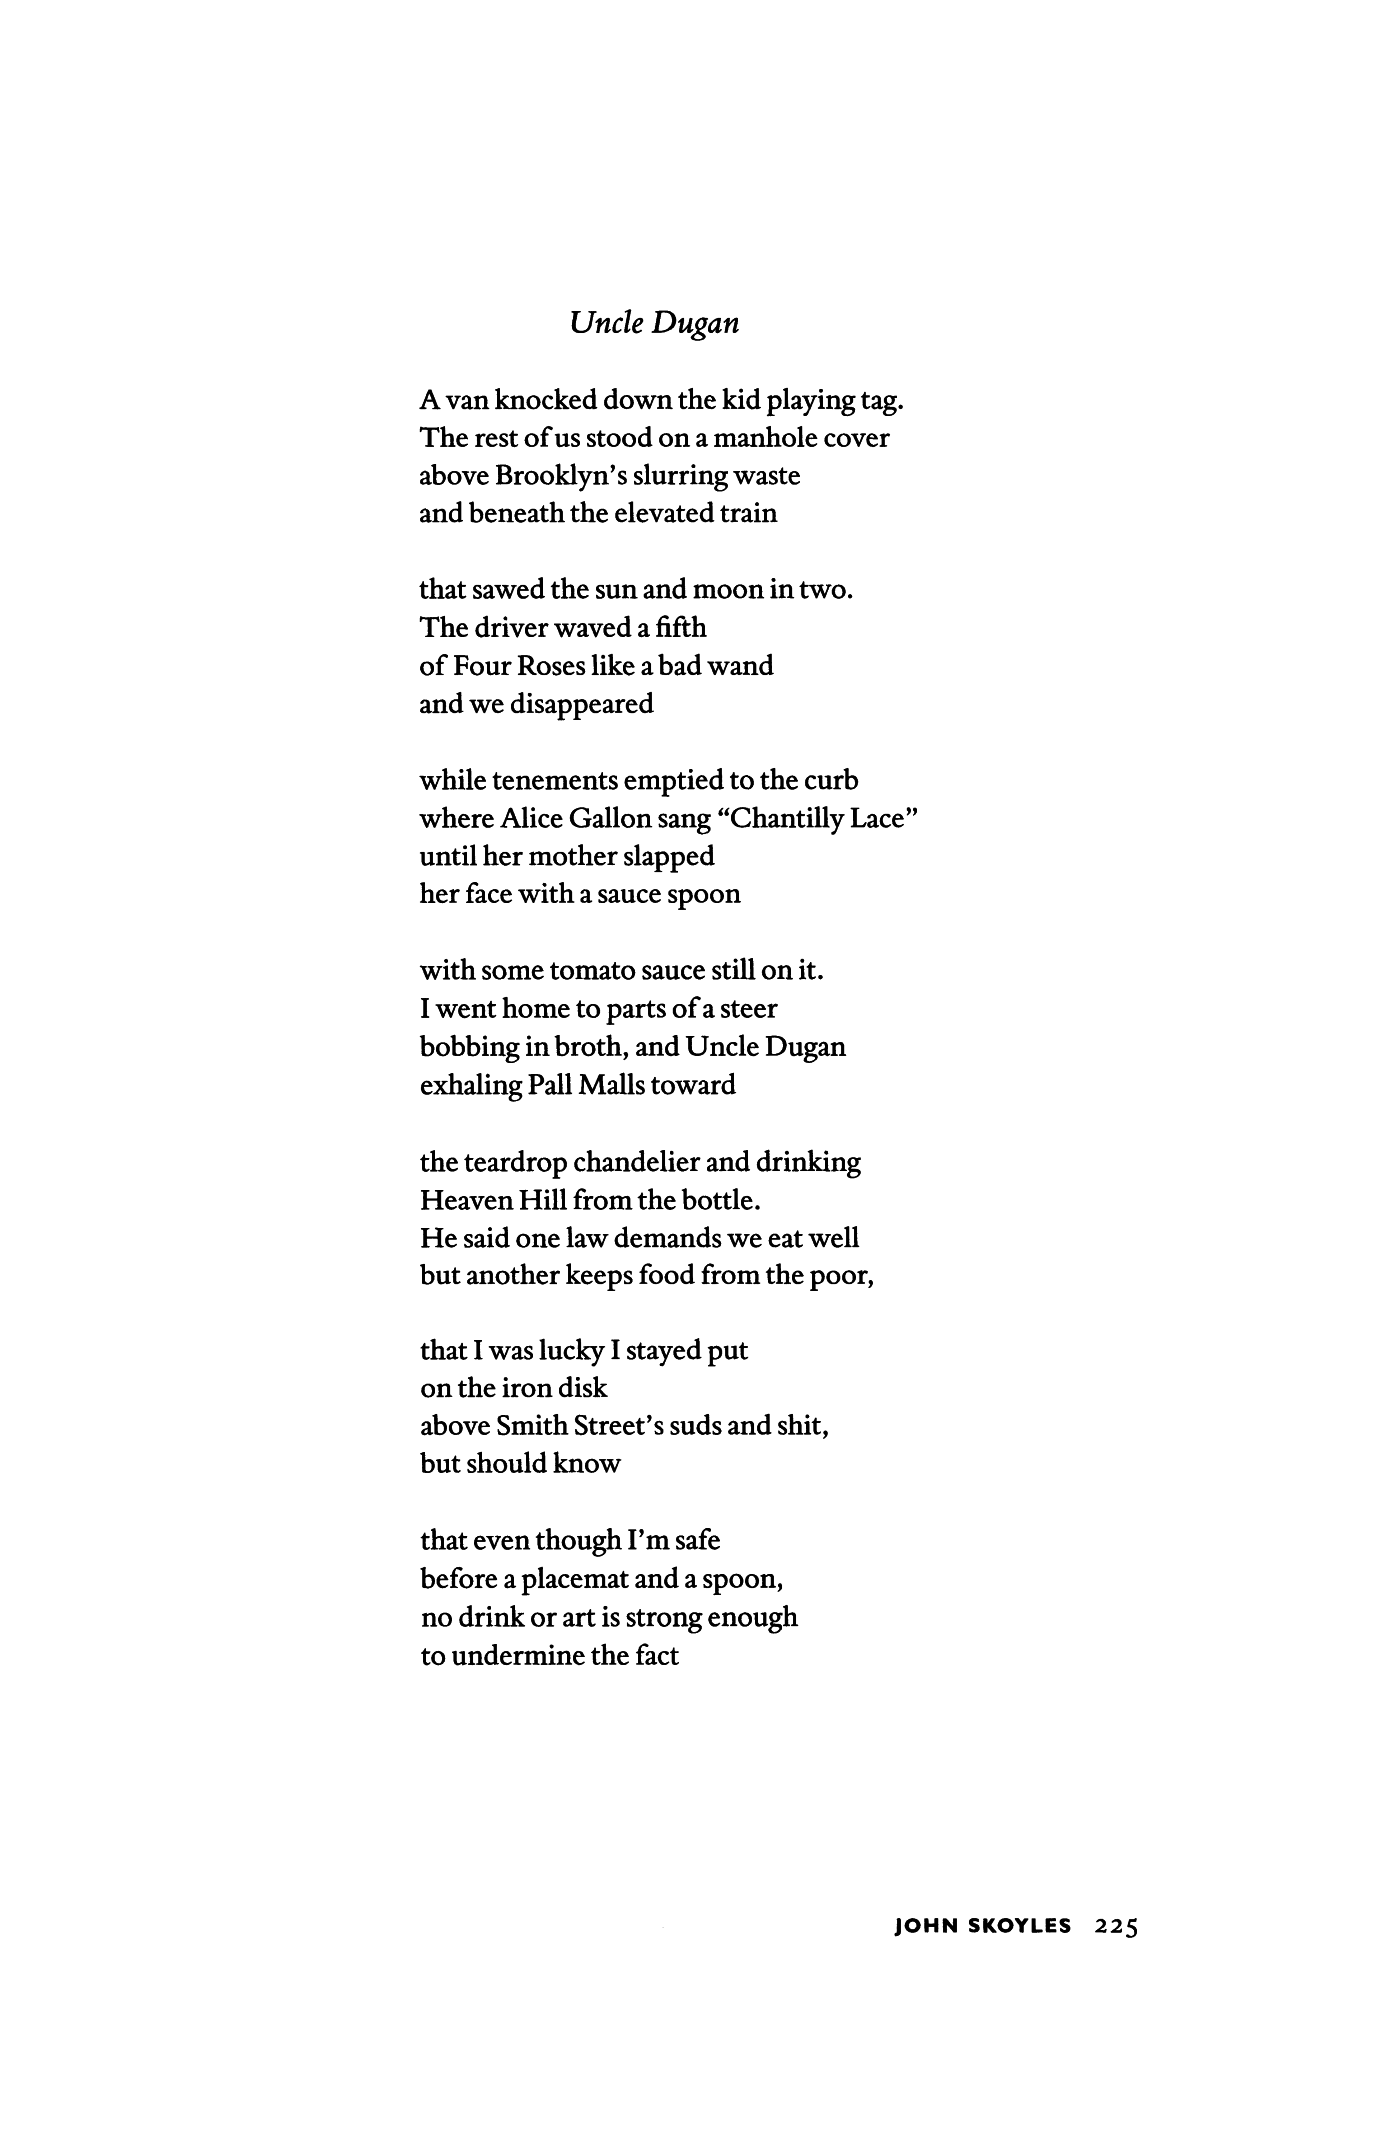 uncle in heaven poem